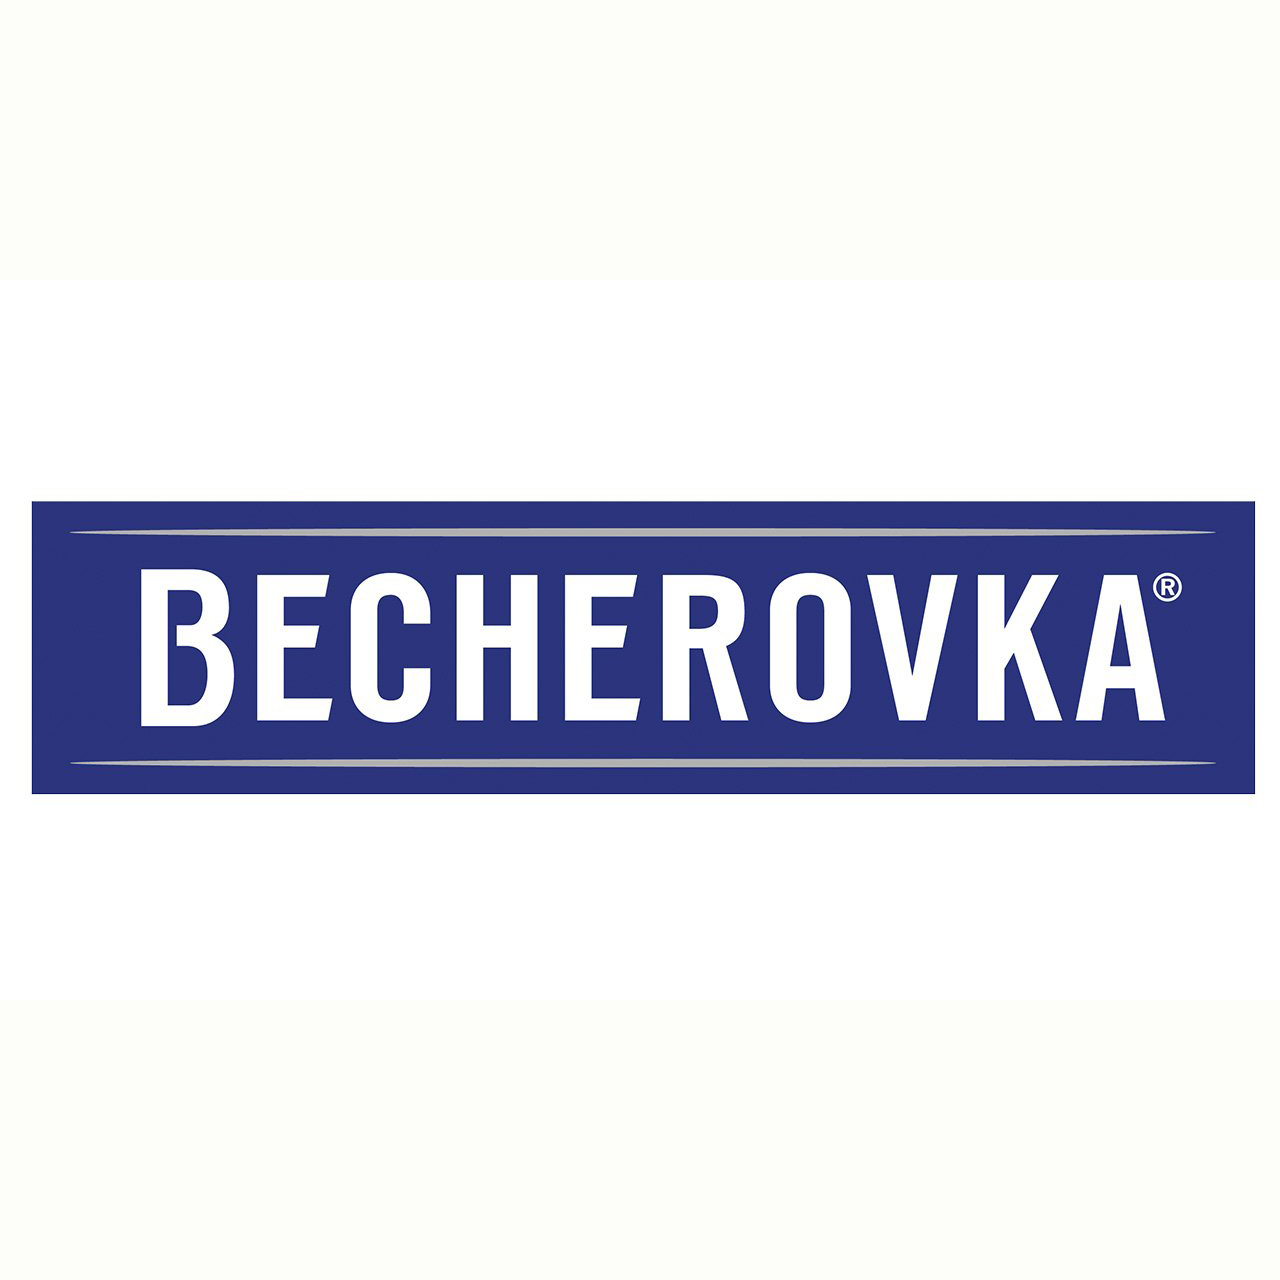 Ликер Becherovka набор 0,7л 38% + 1 металлическая чашка в Украине